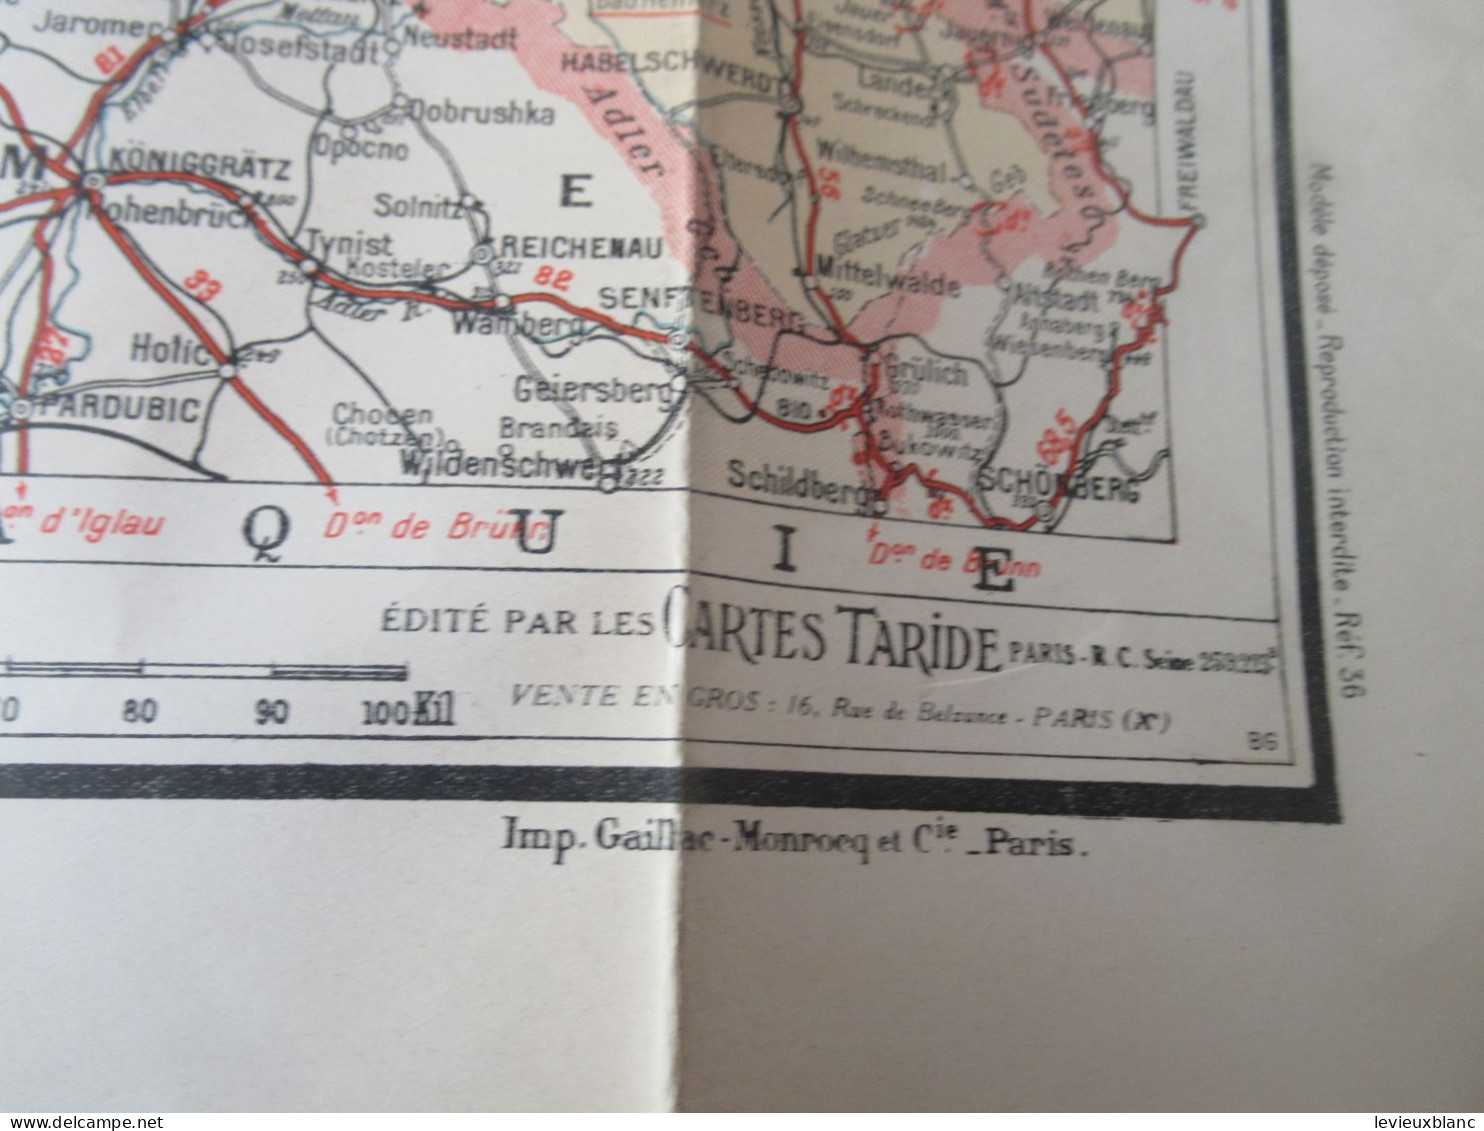 Carte routière ancienne /TARIDE N°36/ Allemagne du Nord/Carte de la POLOGNE à Berlin /Vers 1935-1940       PGC559